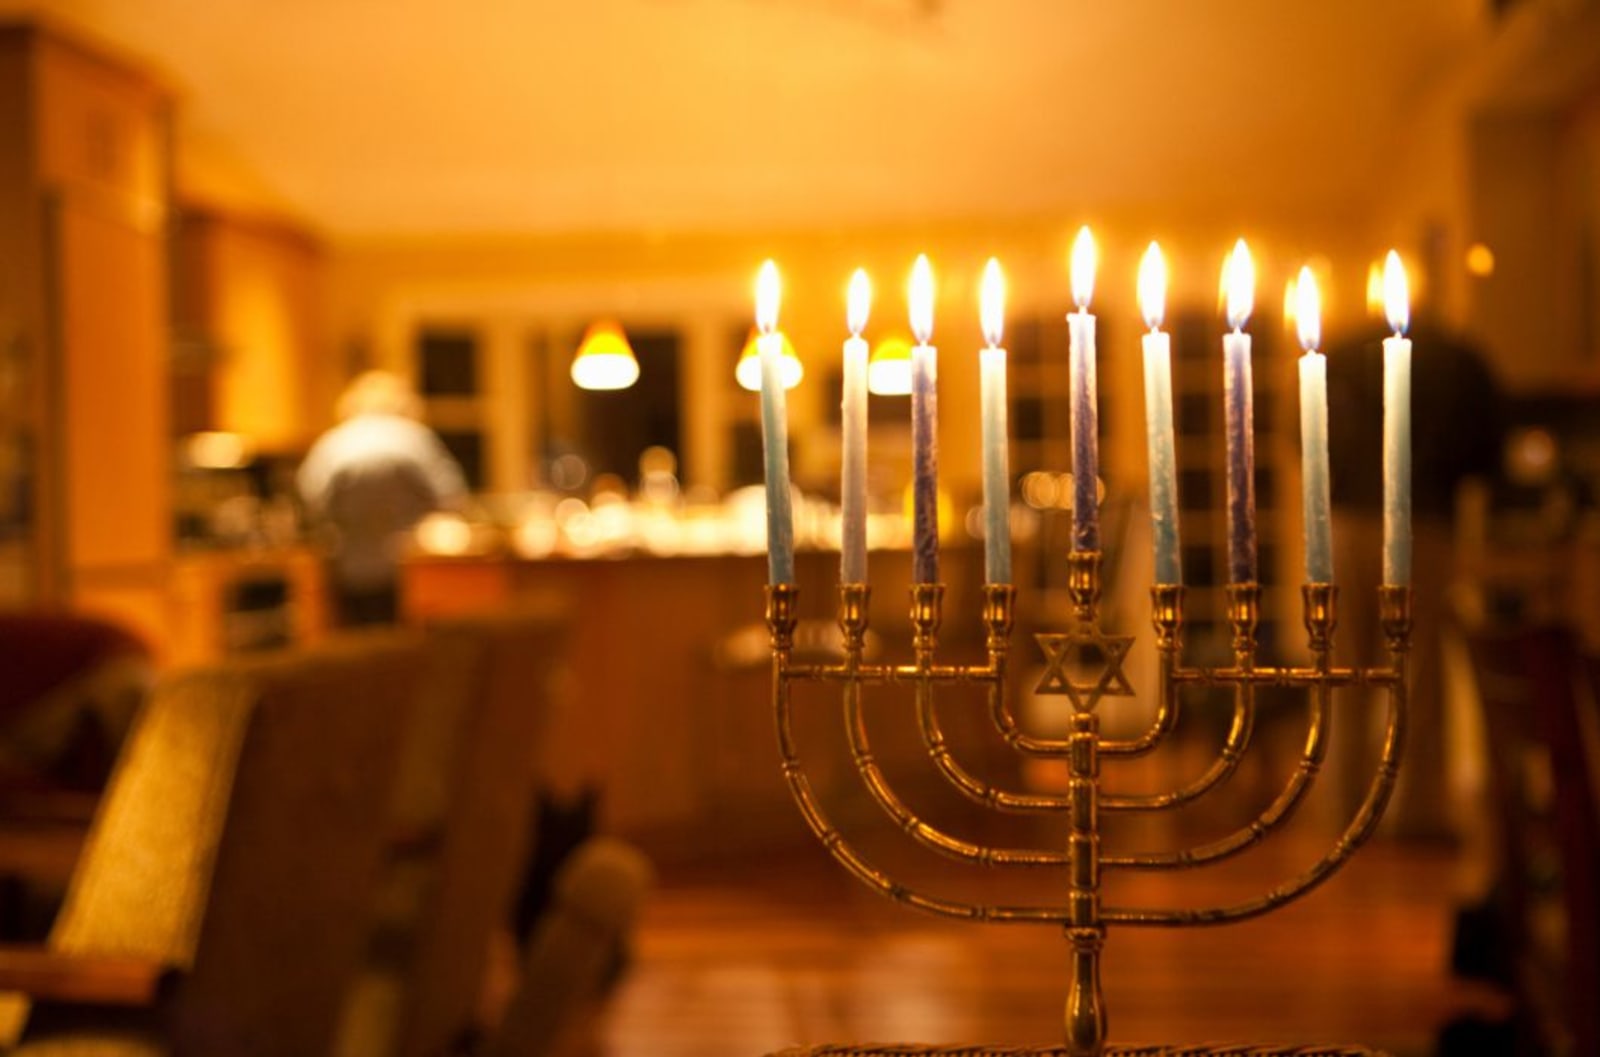 All nine menorah candles lit for Hannukah